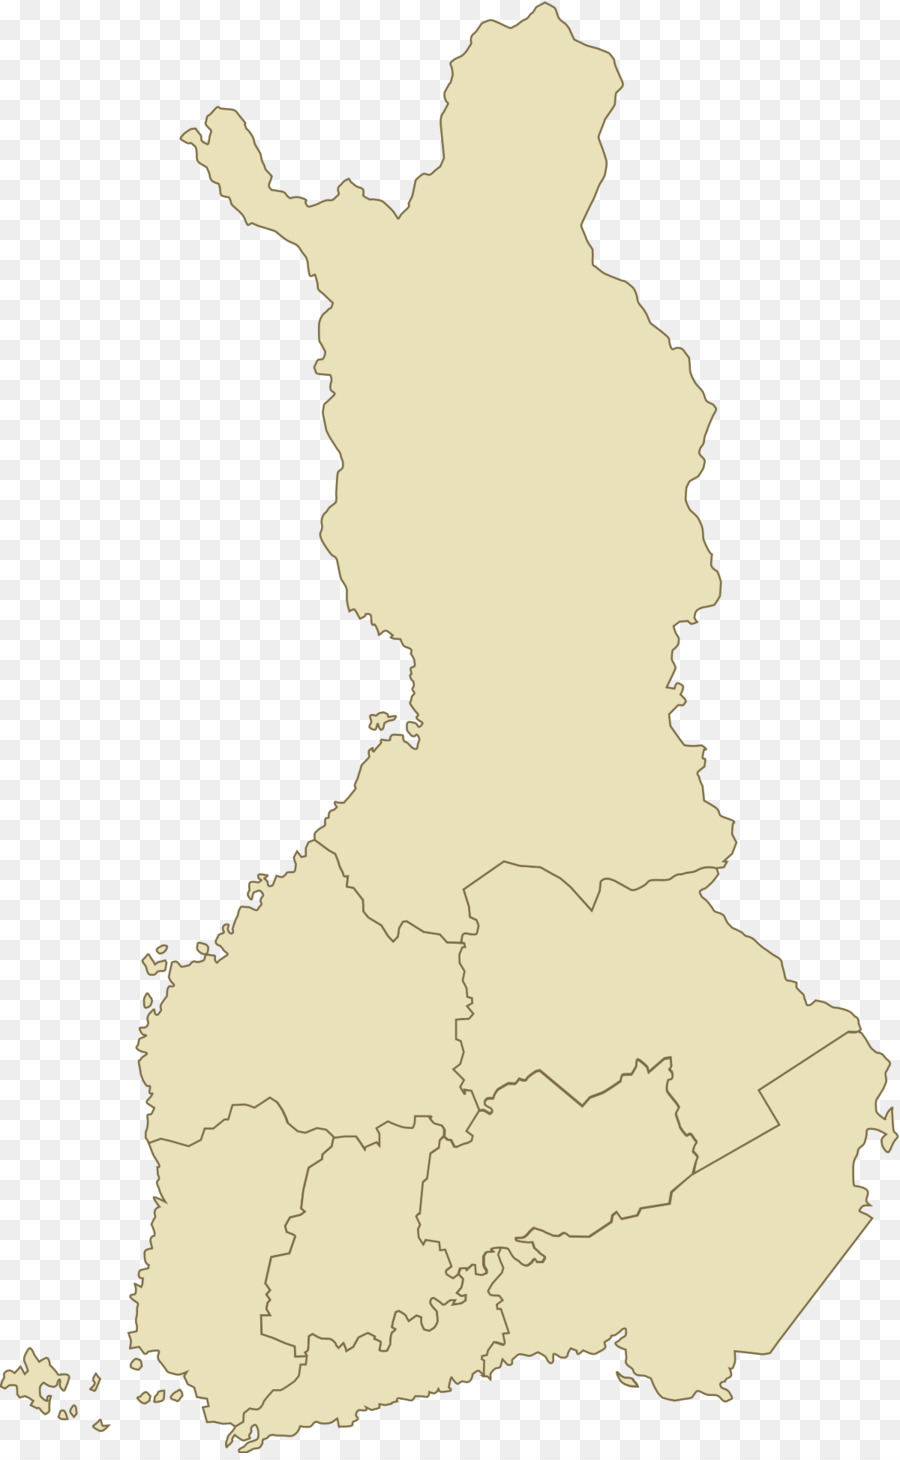 แกรนด์ Duchy ของฟินแลนด์ Name，ฟินแลนด์ Name PNG